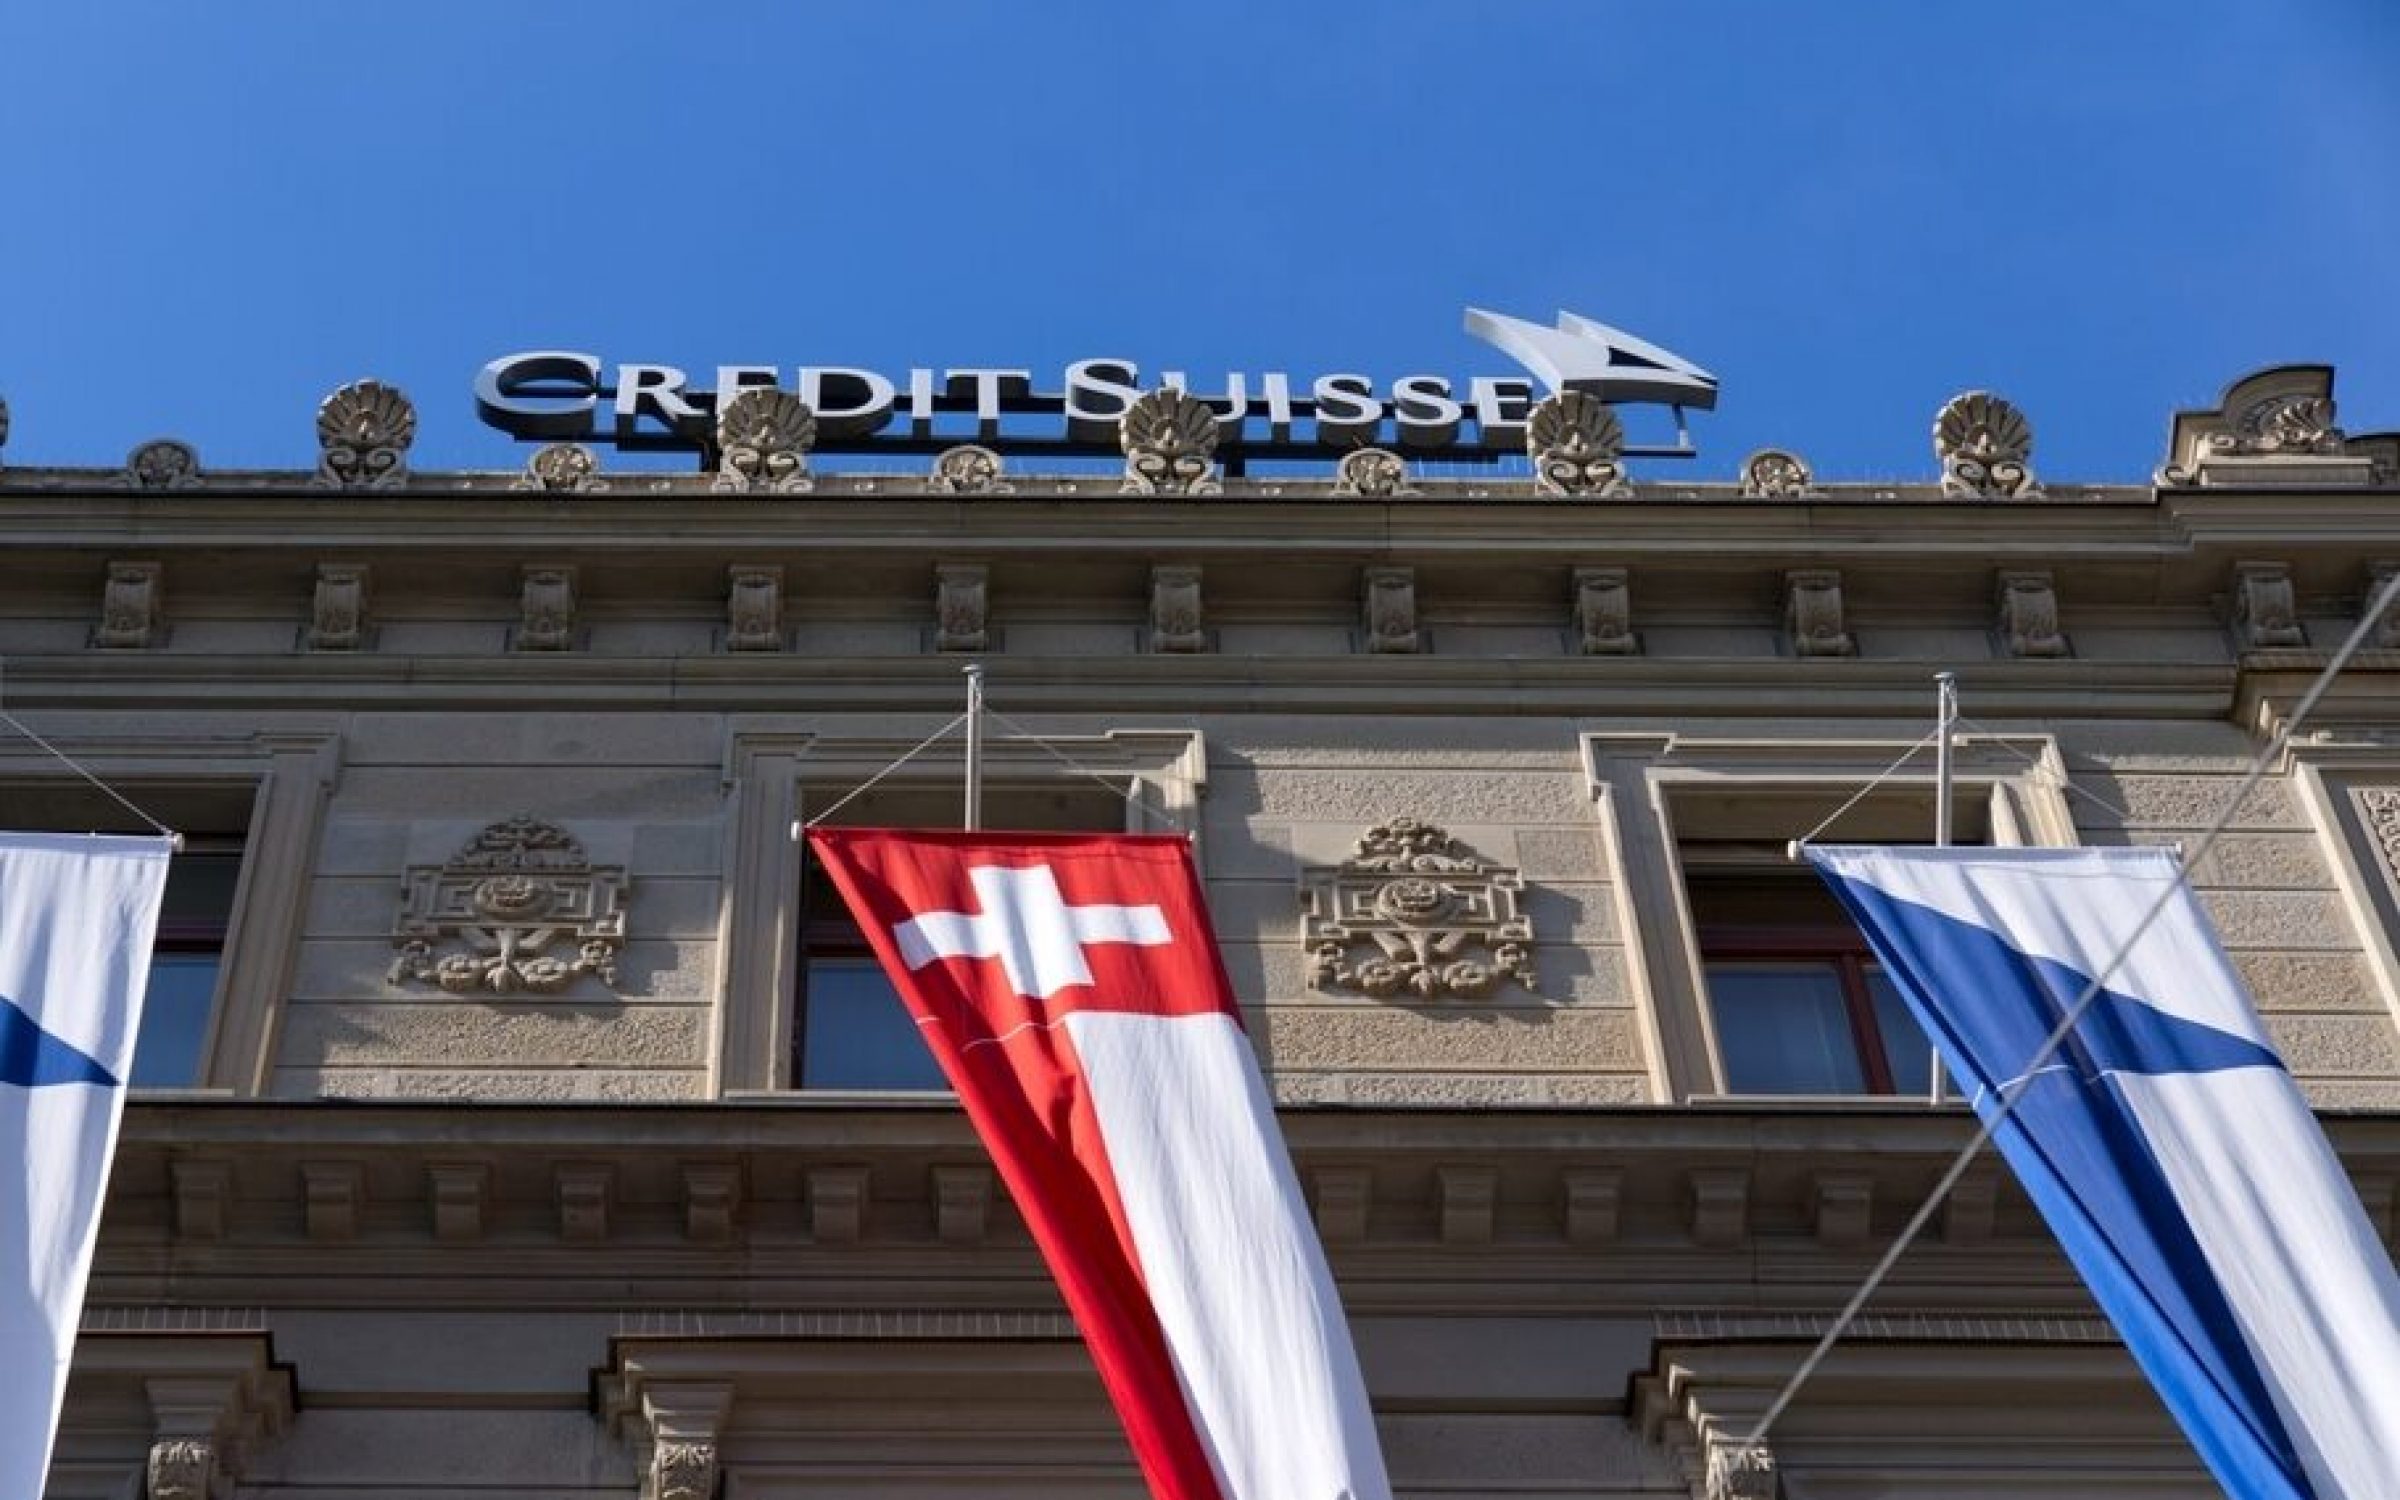 Credit Suisse (via Michael Derrer Fuchs/ Shutterstock)